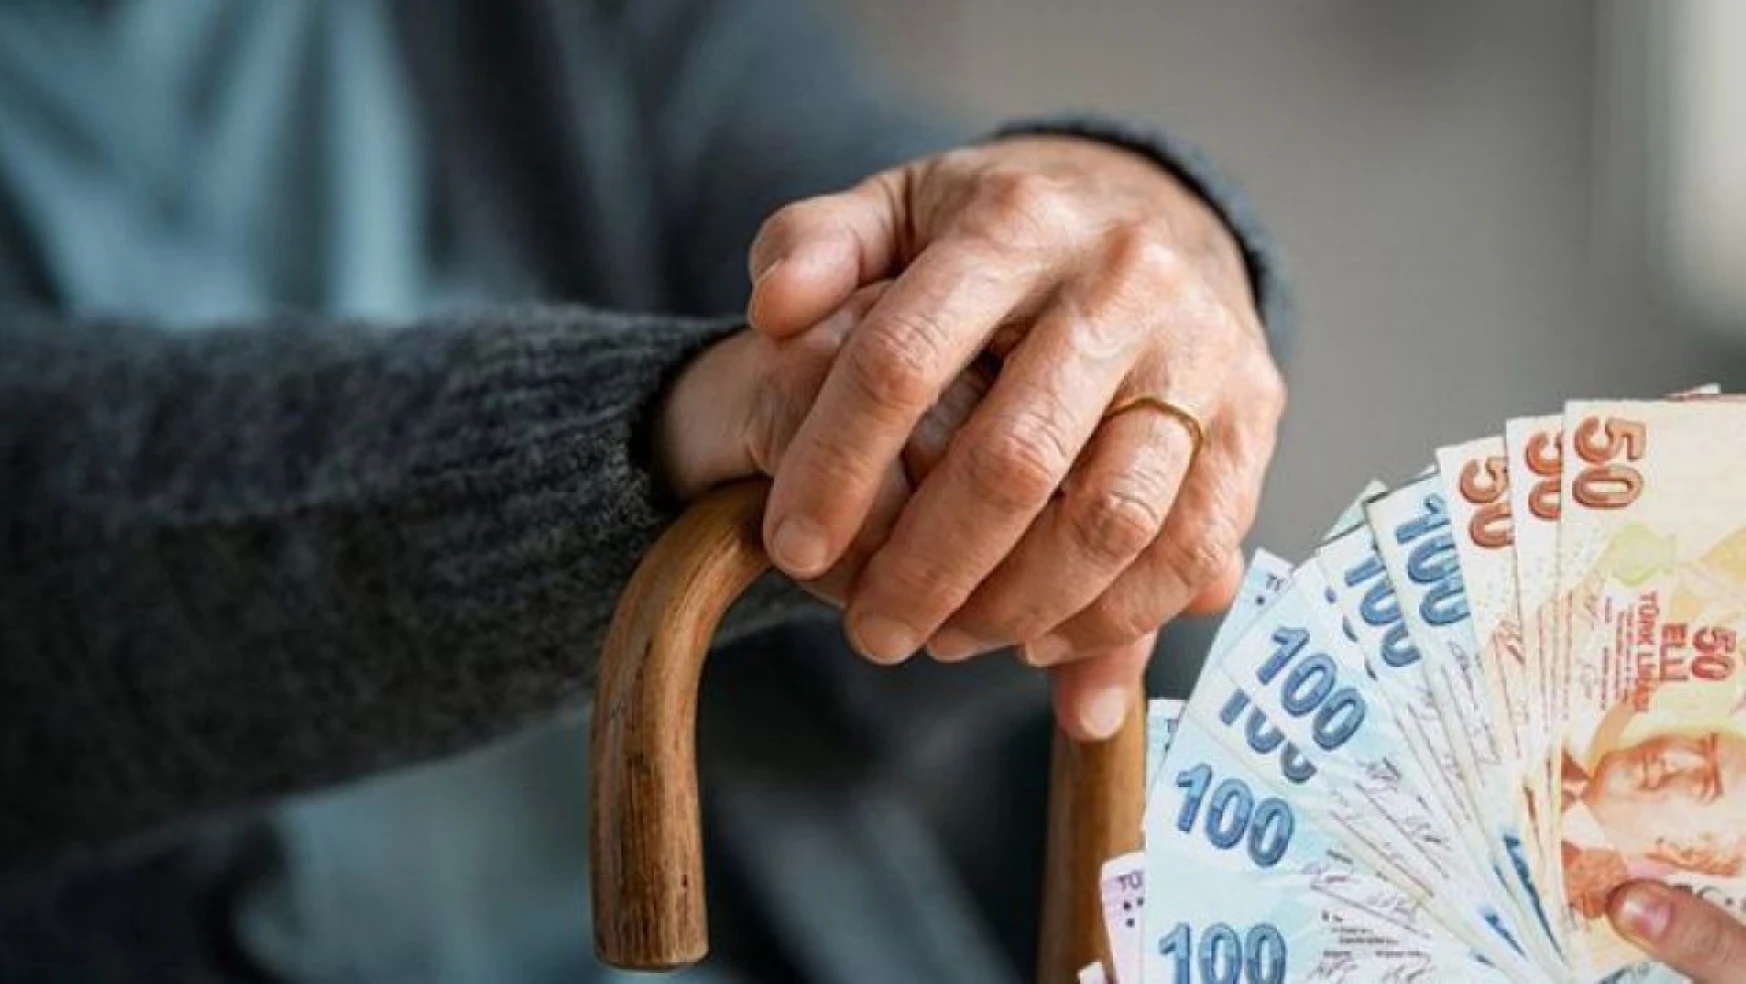 10-12 Yıl Prim Ödeyene Erken Emeklilik Hakkı! 1992-1996-2001-2011 Arası SGK'lılara Emeklilik Müjdesi